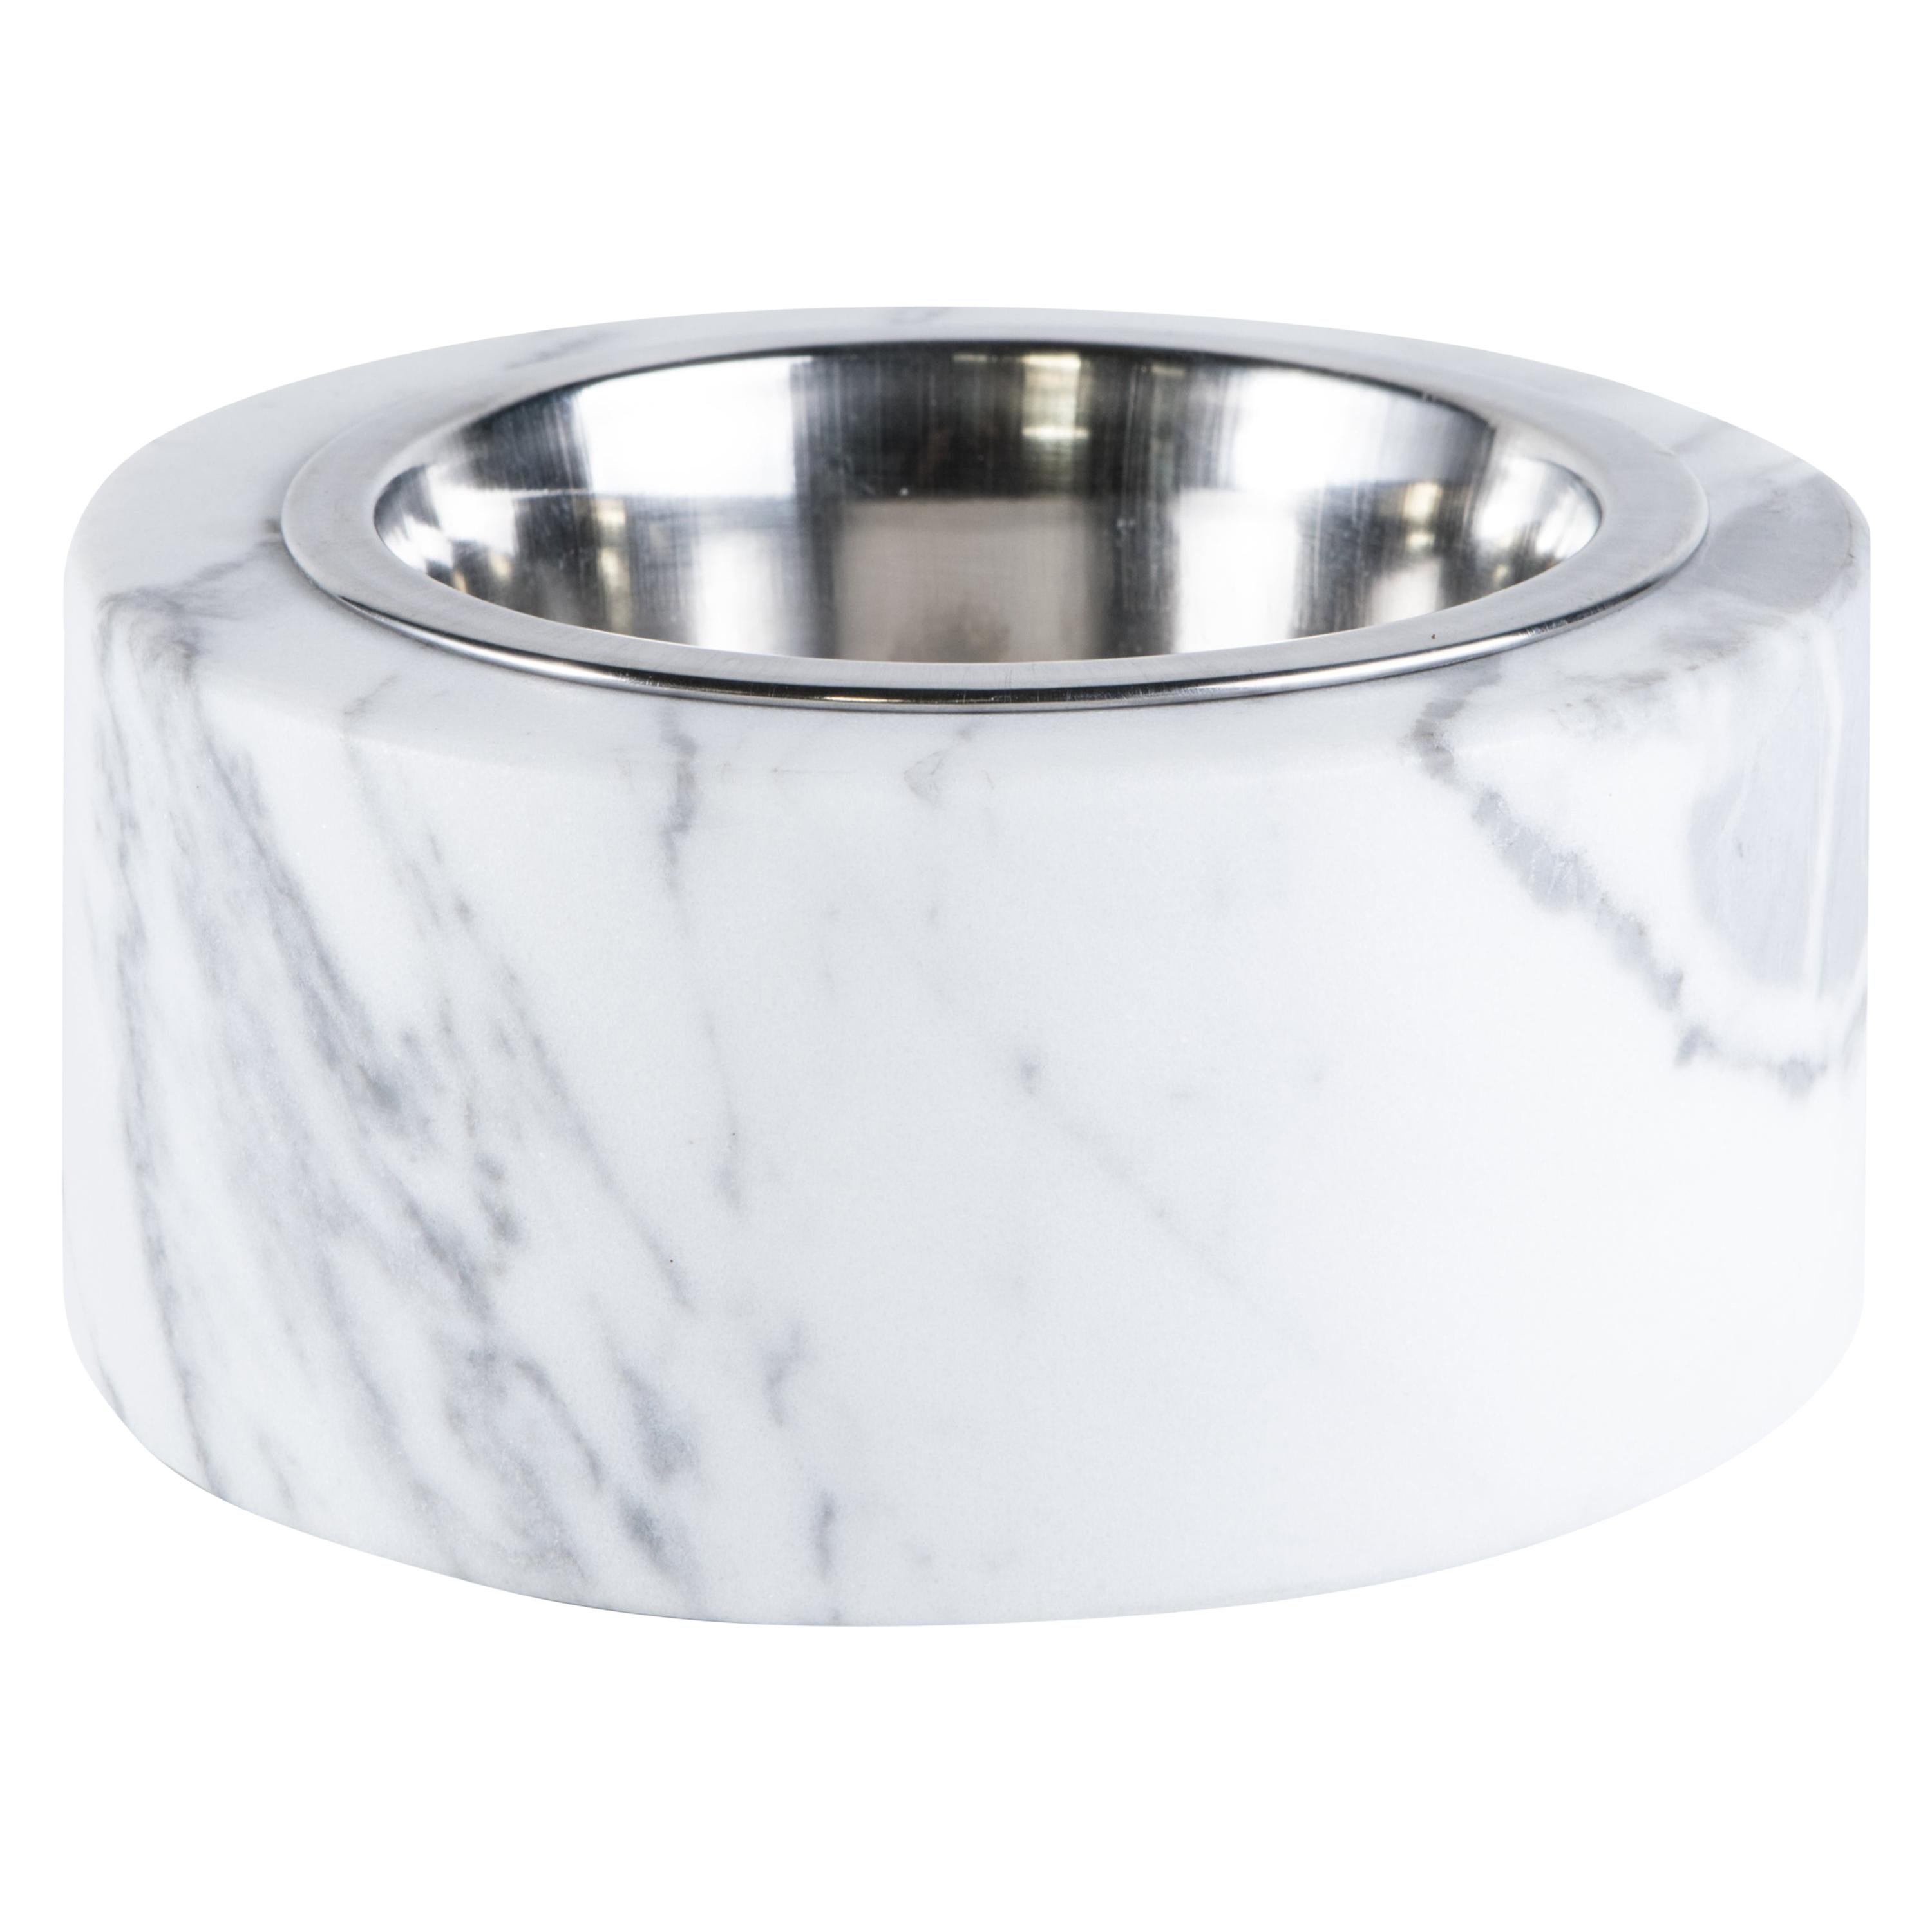 Handgefertigte Schale für Katzen oder Hunde aus weißem Carrara-Marmor mit abnehmbarem Stahl